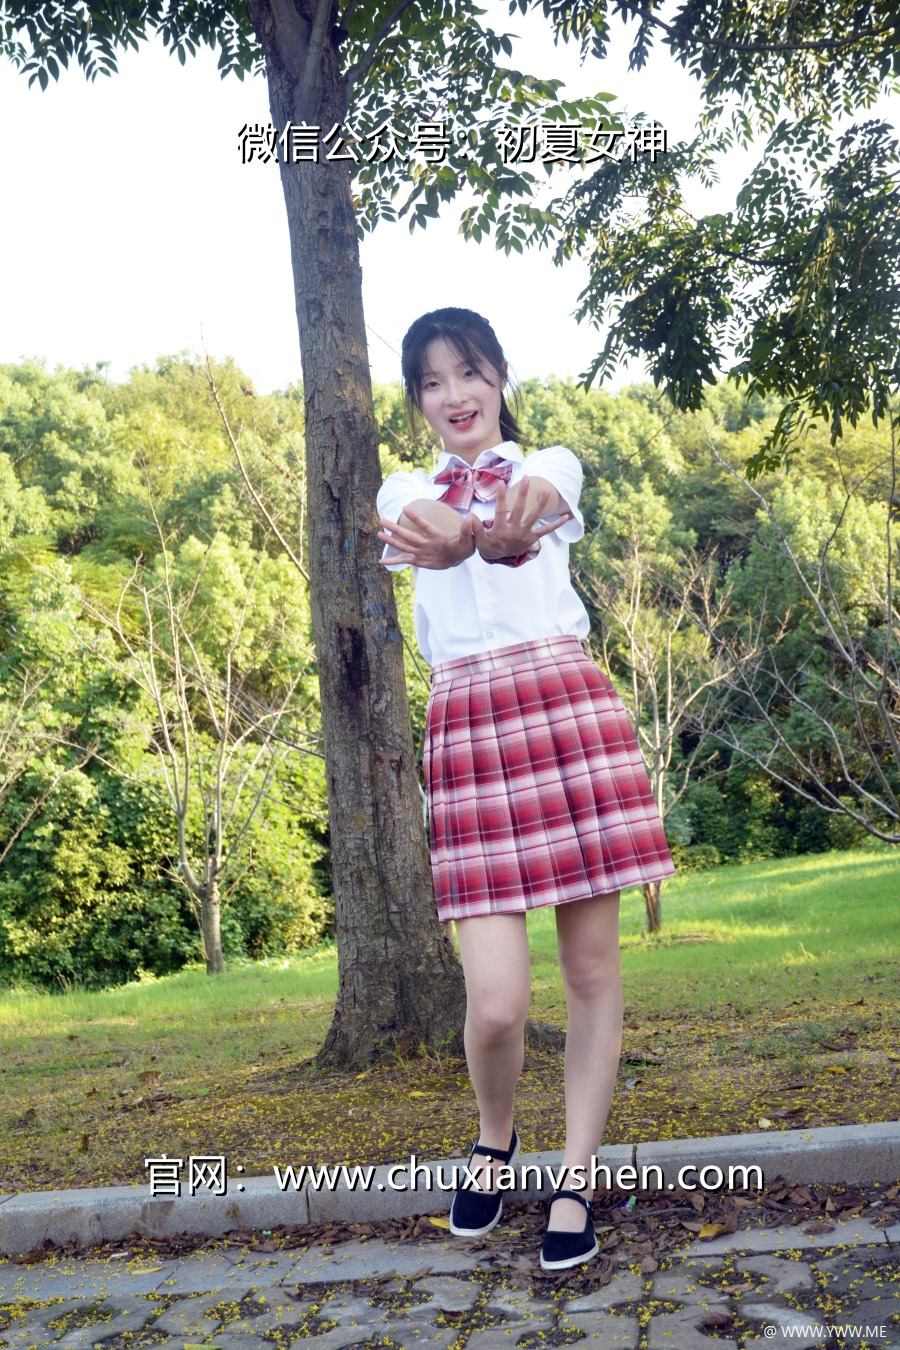 [初夏女神] 091 安妮~【草莓色JK】这款JK套装搭配匡威帆布鞋也挺好看-HDMISS